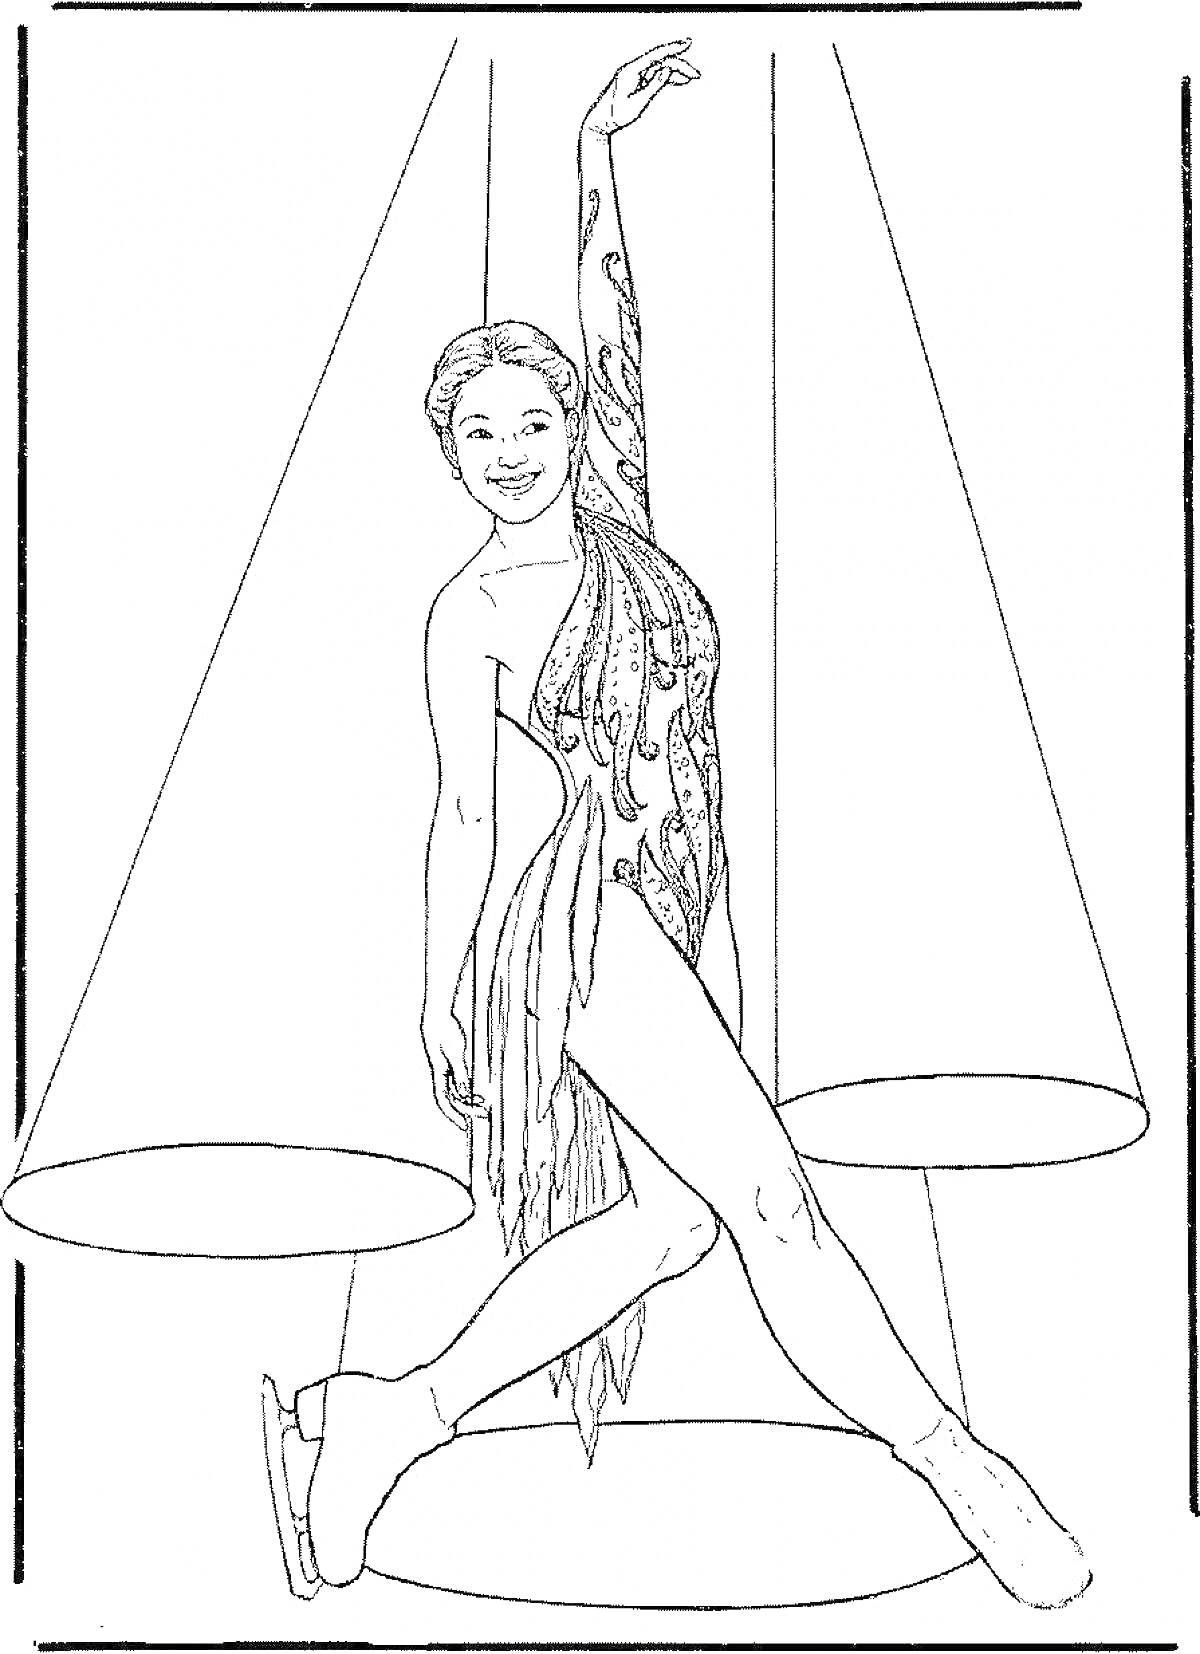 Раскраска Девушка фигуристка с поднятой рукой на льду в лучах прожекторов